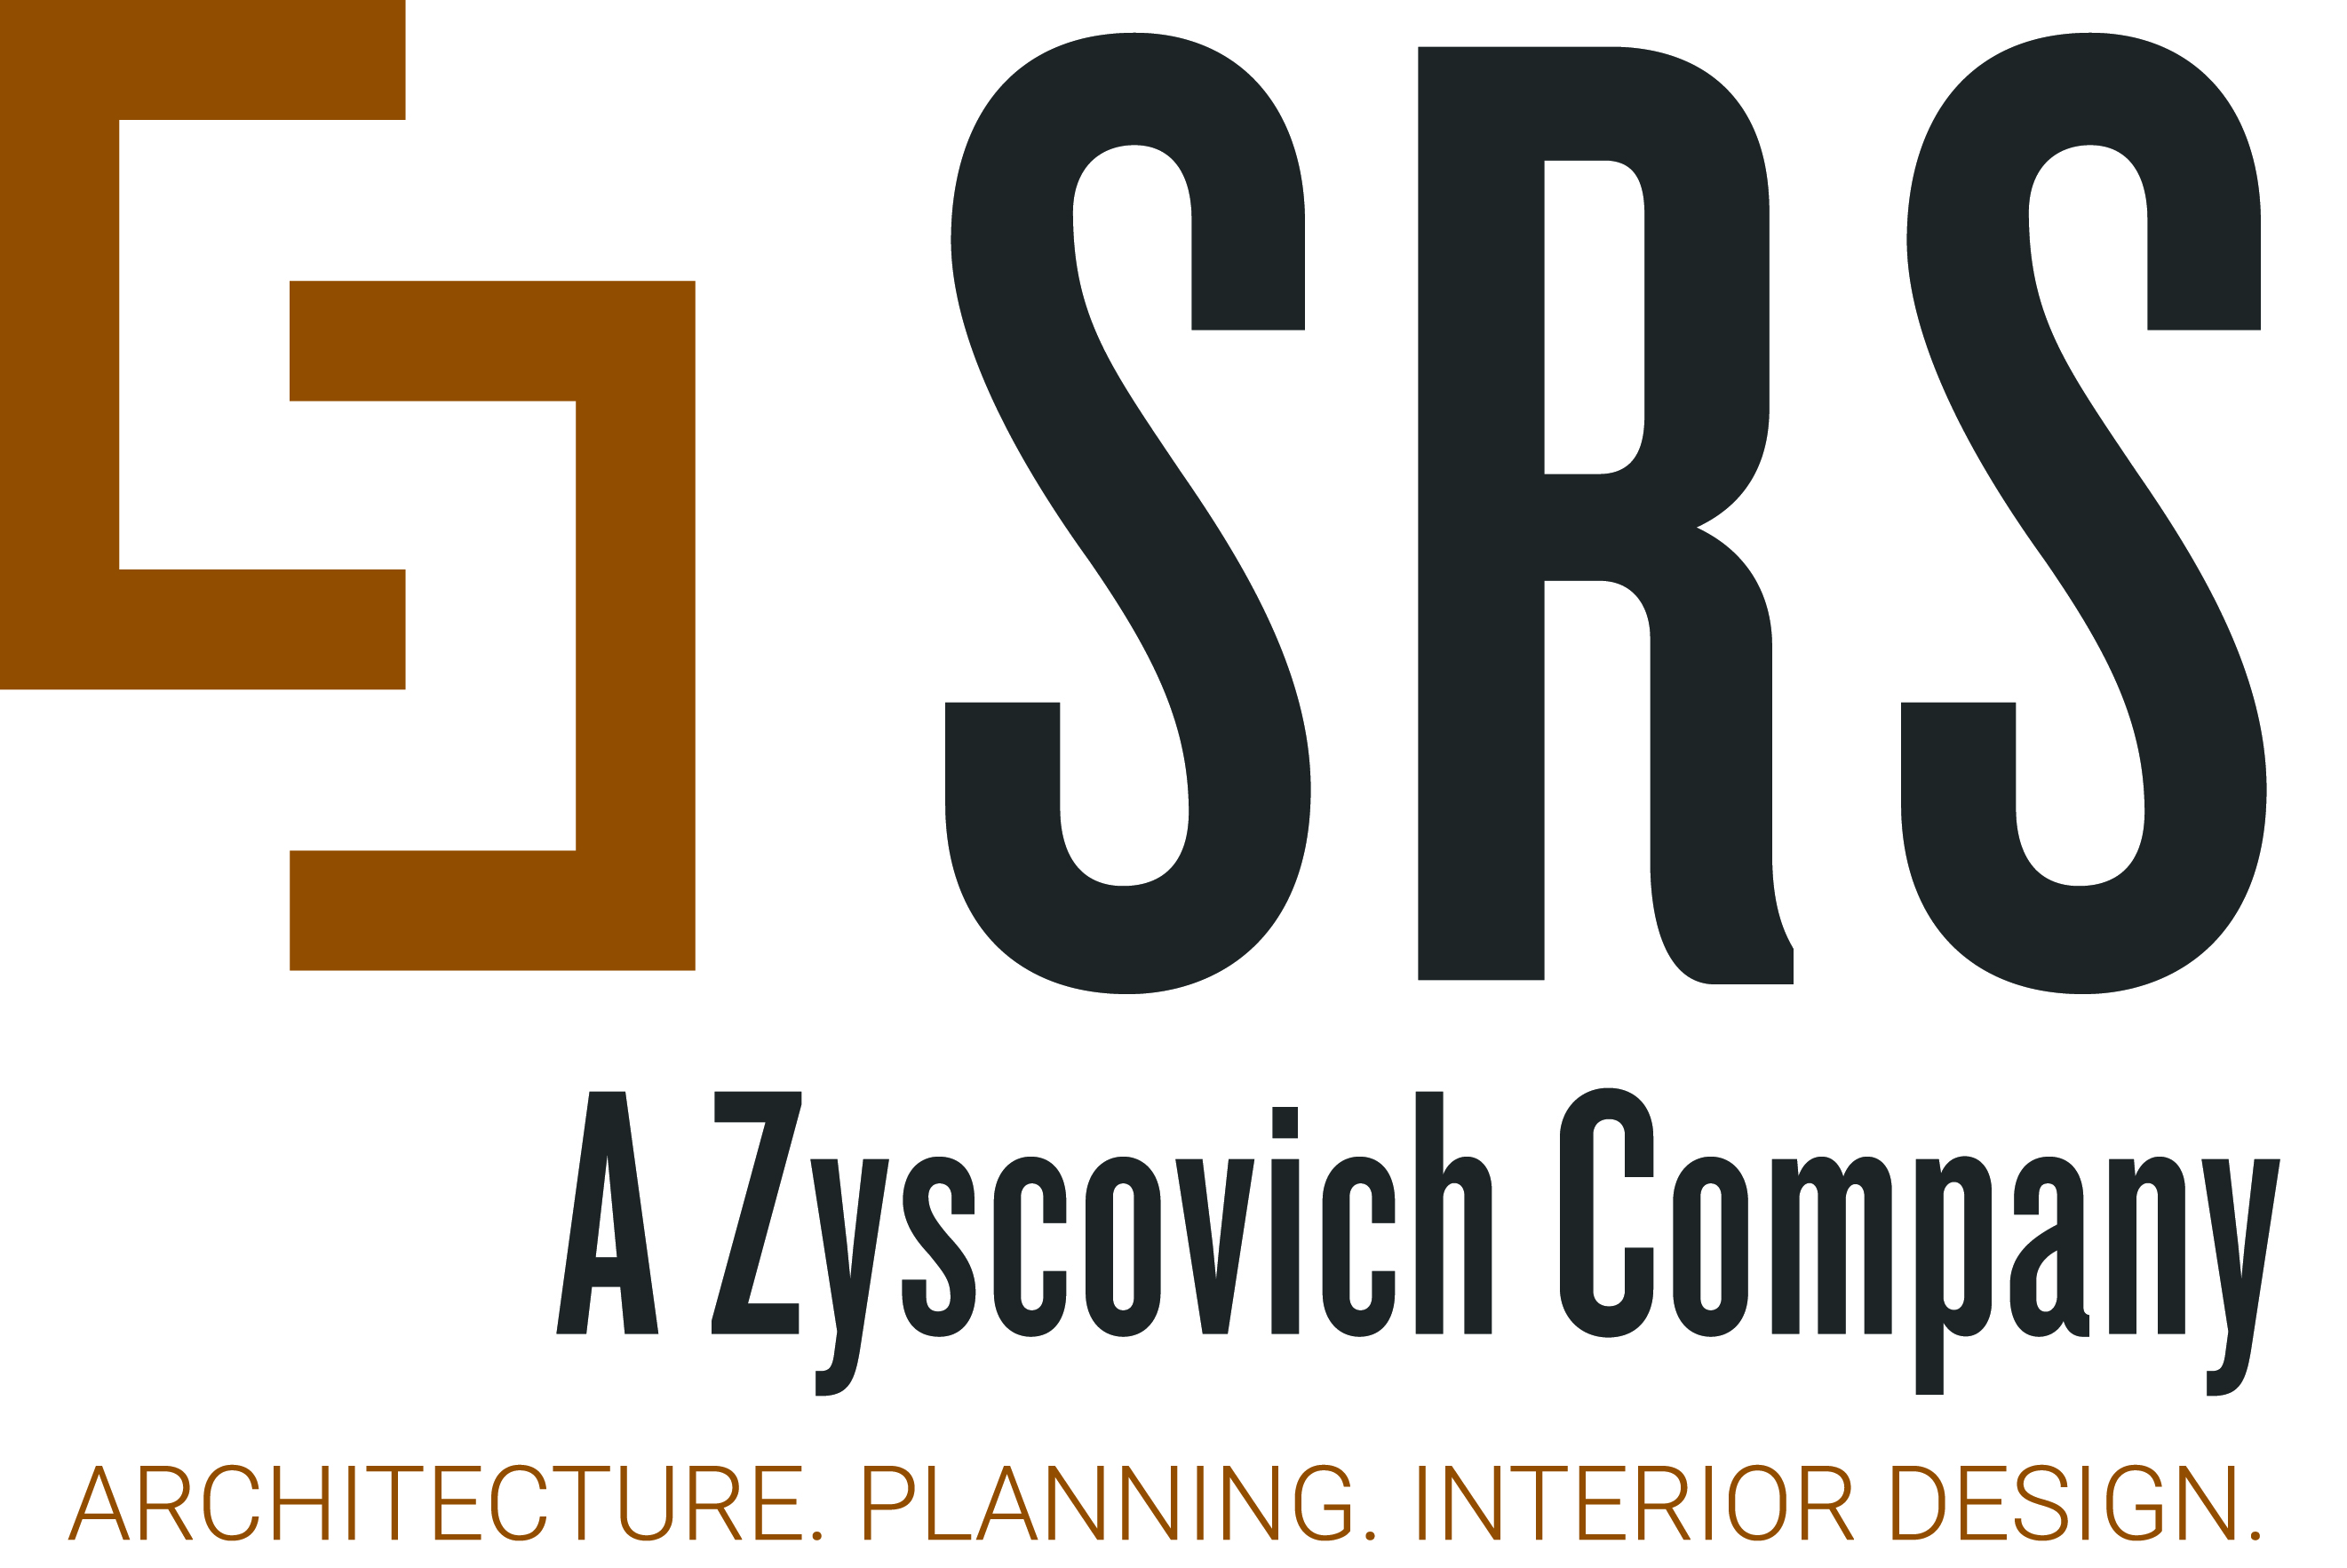 Synalovski Logo